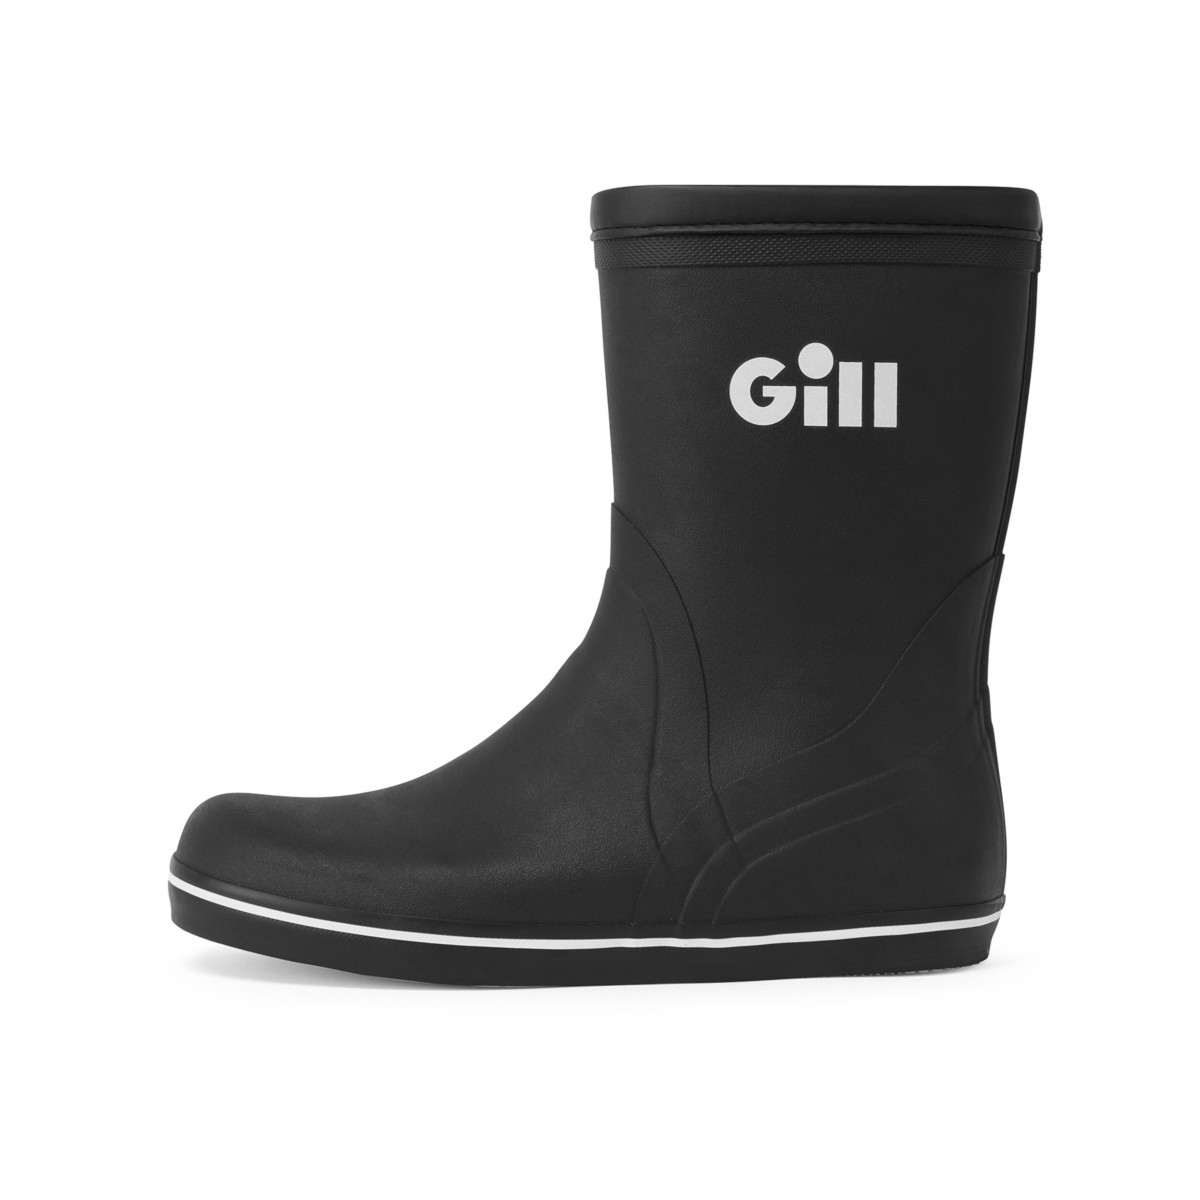 Gill Short Cruising Boot bottes en caoutchouc unisexe noir, taille 42